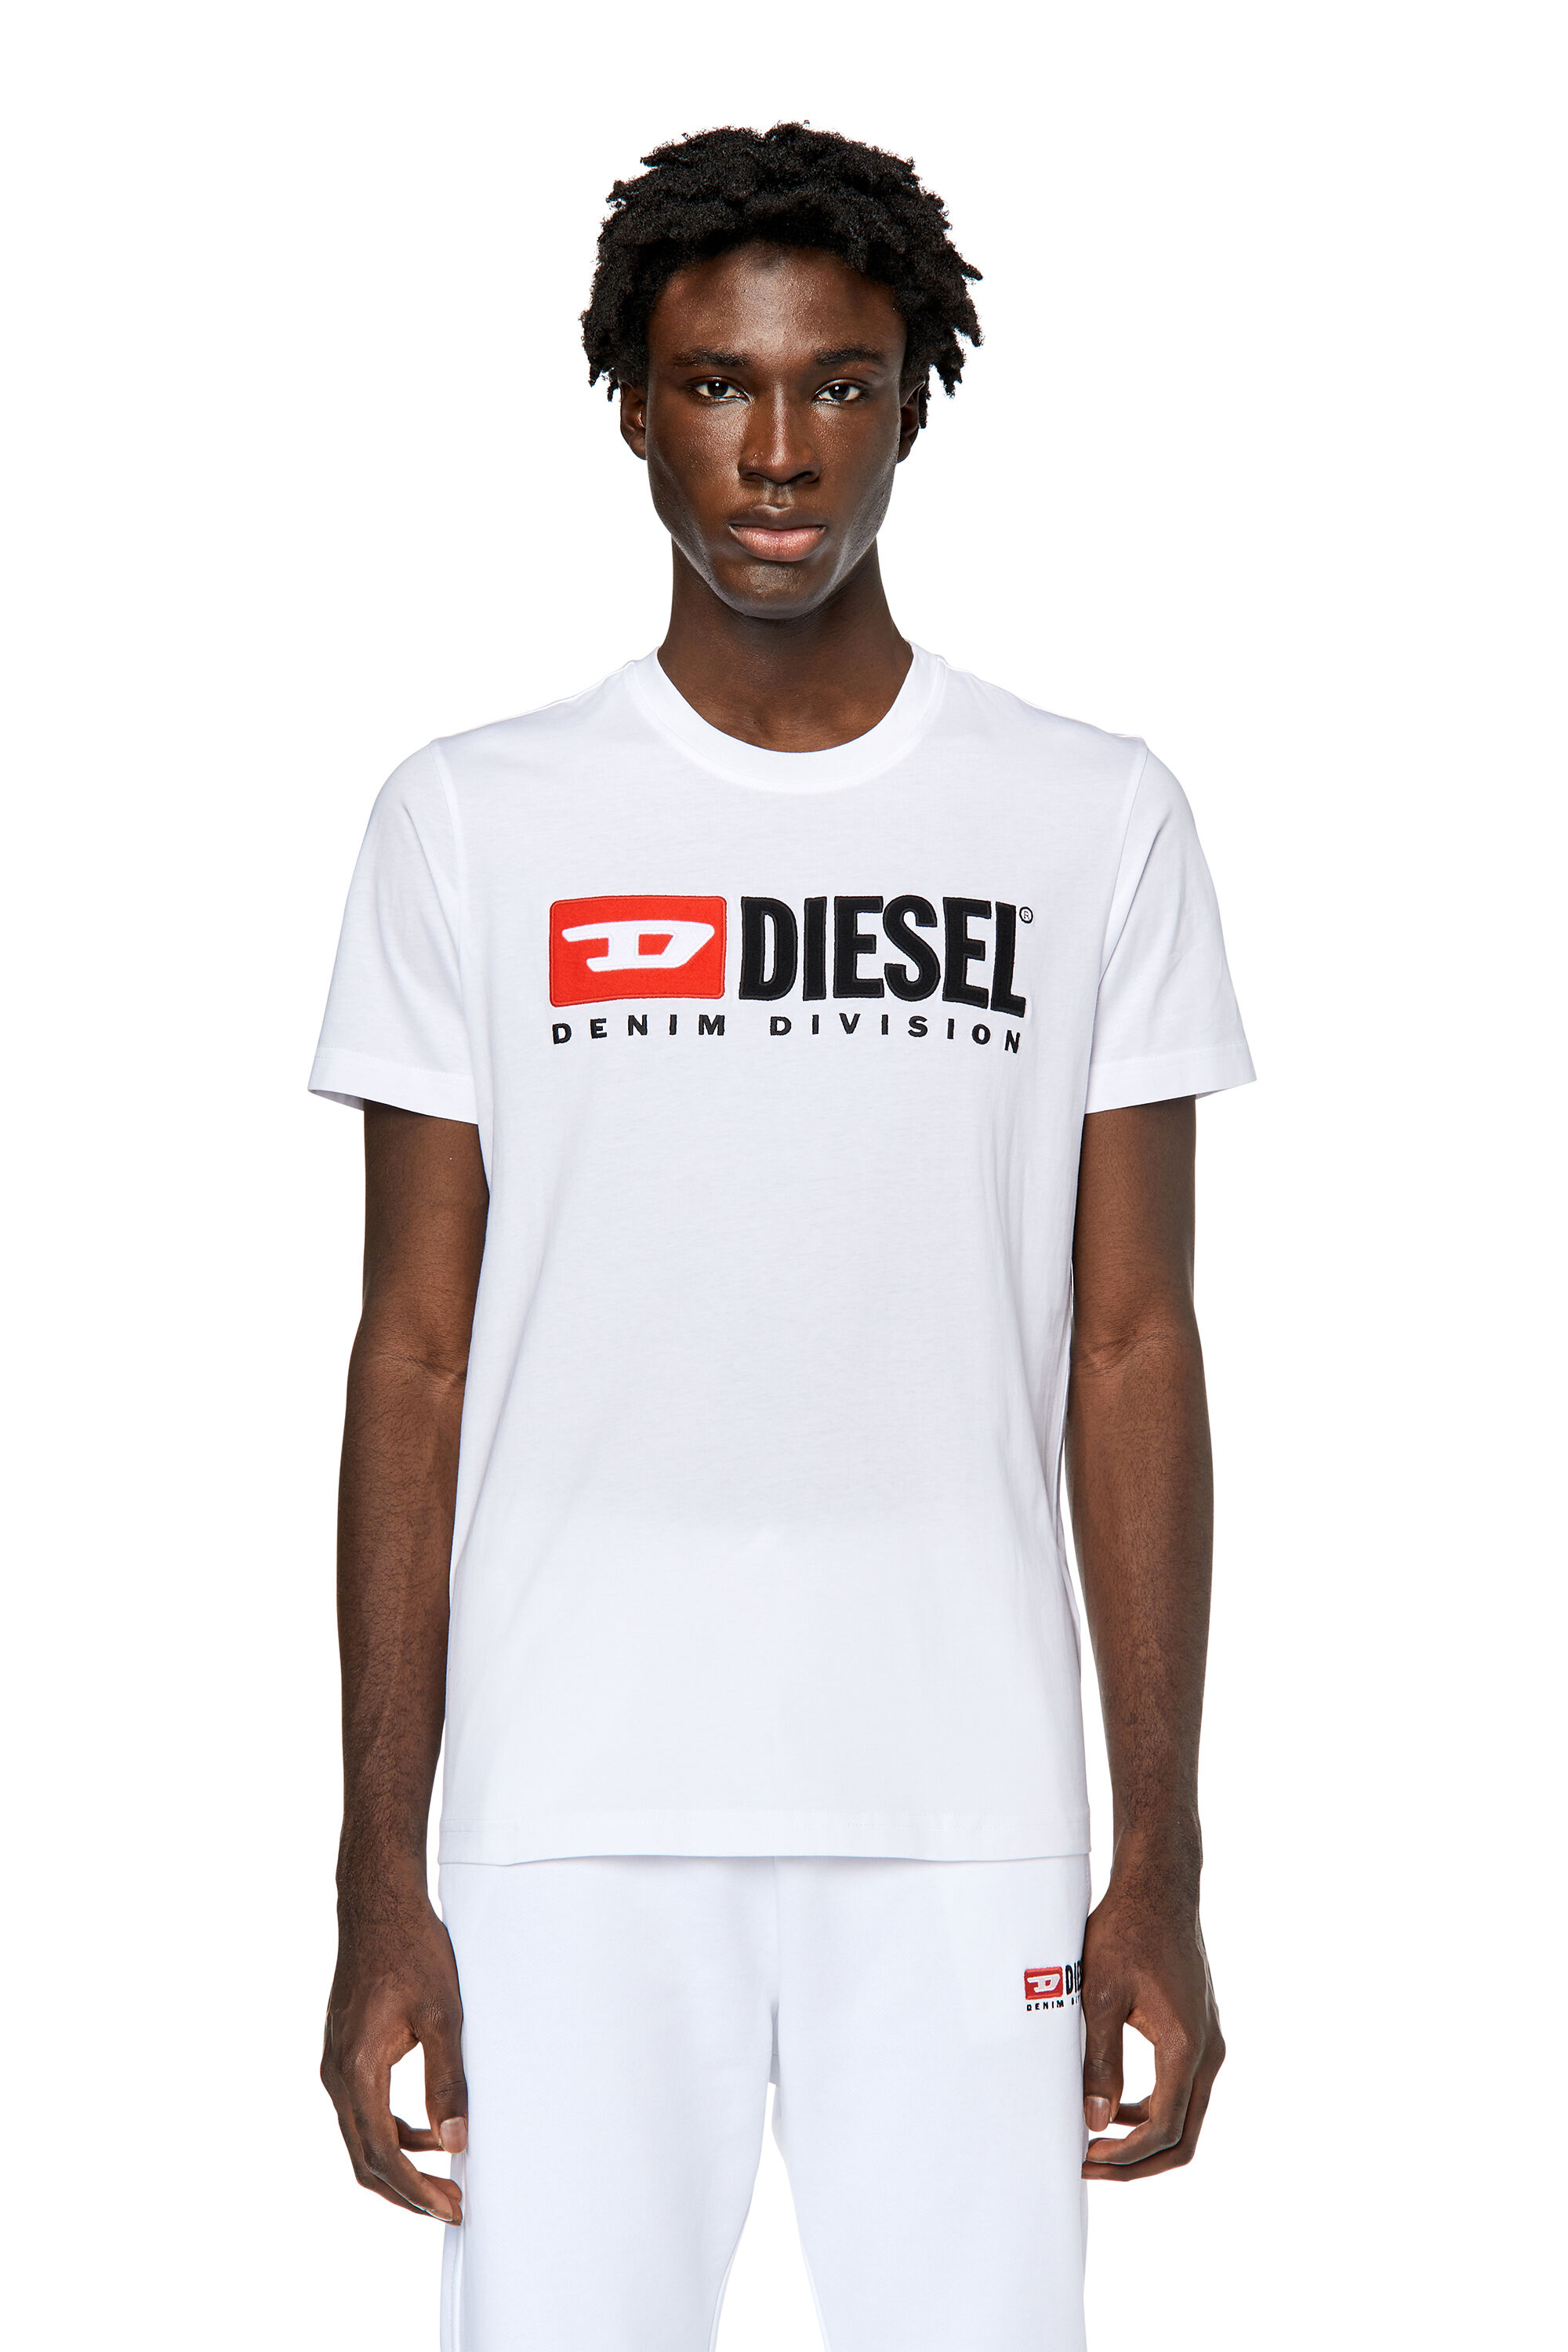 Somatische cel ze hardop T-DIEGOR-DIV Man: T-shirt with embroidered logo | Diesel